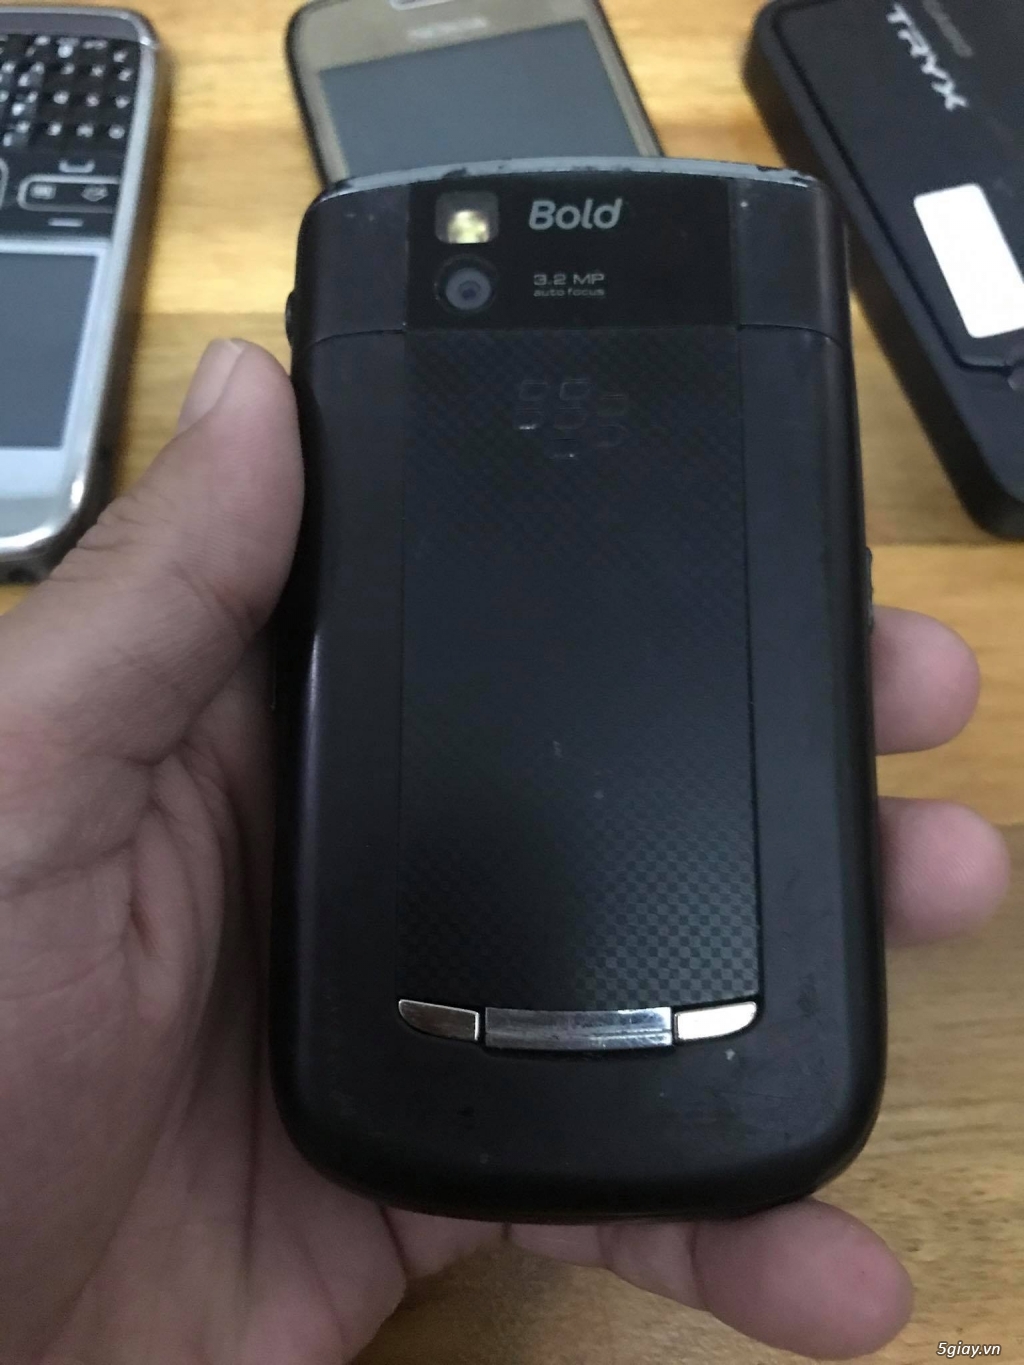 Bán BB 9650 - Nokia E72/C3-01/2700/1208 , mtb cùng ít xác điện thoại. - 4